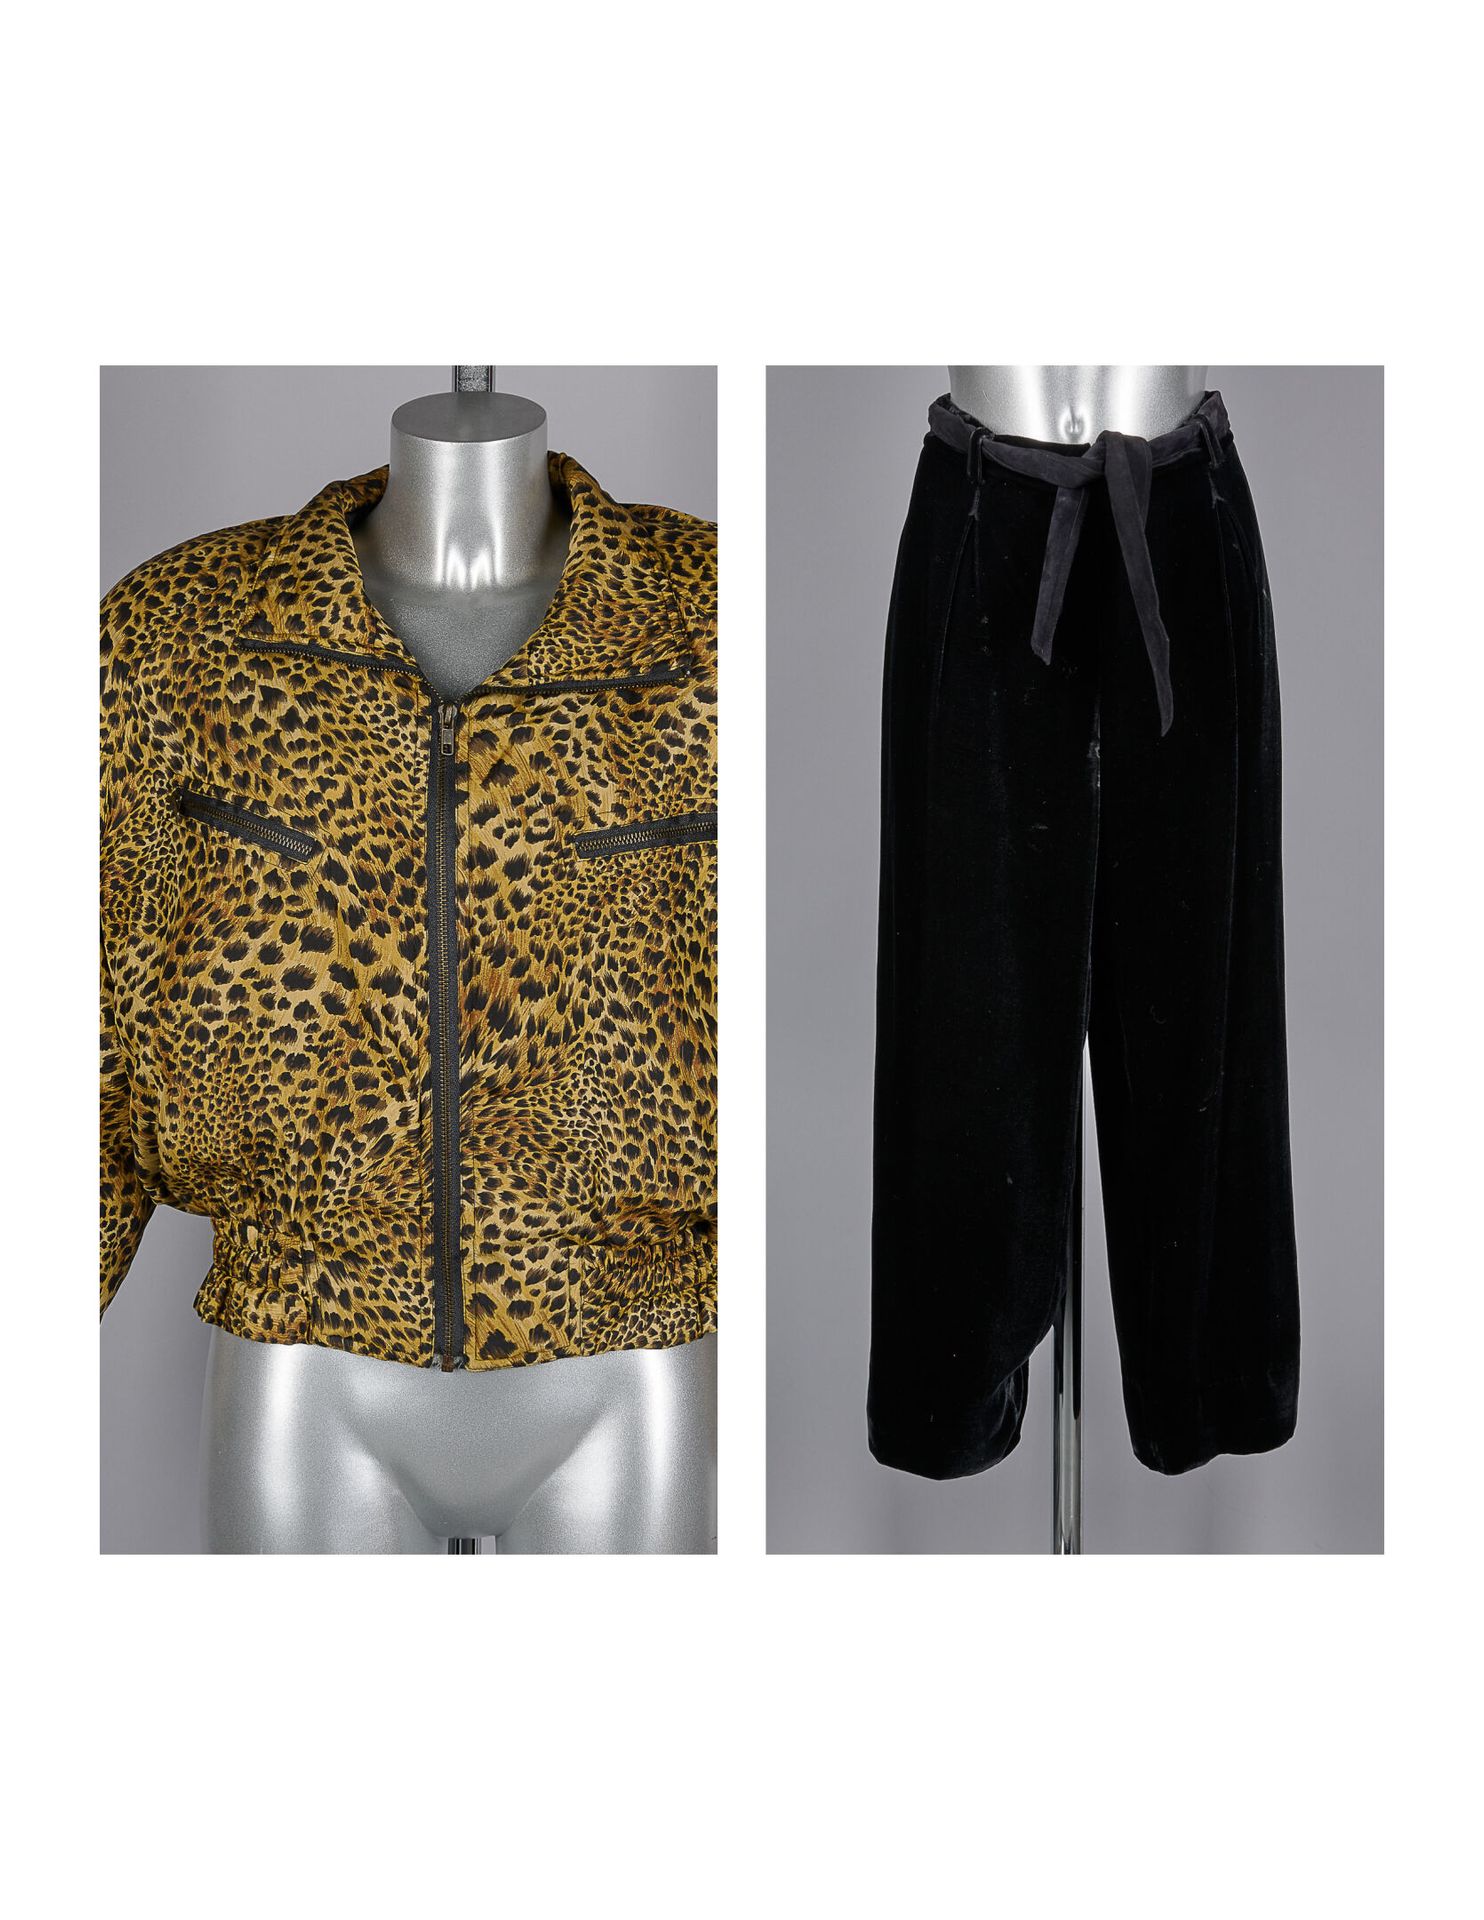 NOBLESSE SOIE, LA PERLA Mottled silk BLOUSON (T S), wide black velvet panne PANT&hellip;